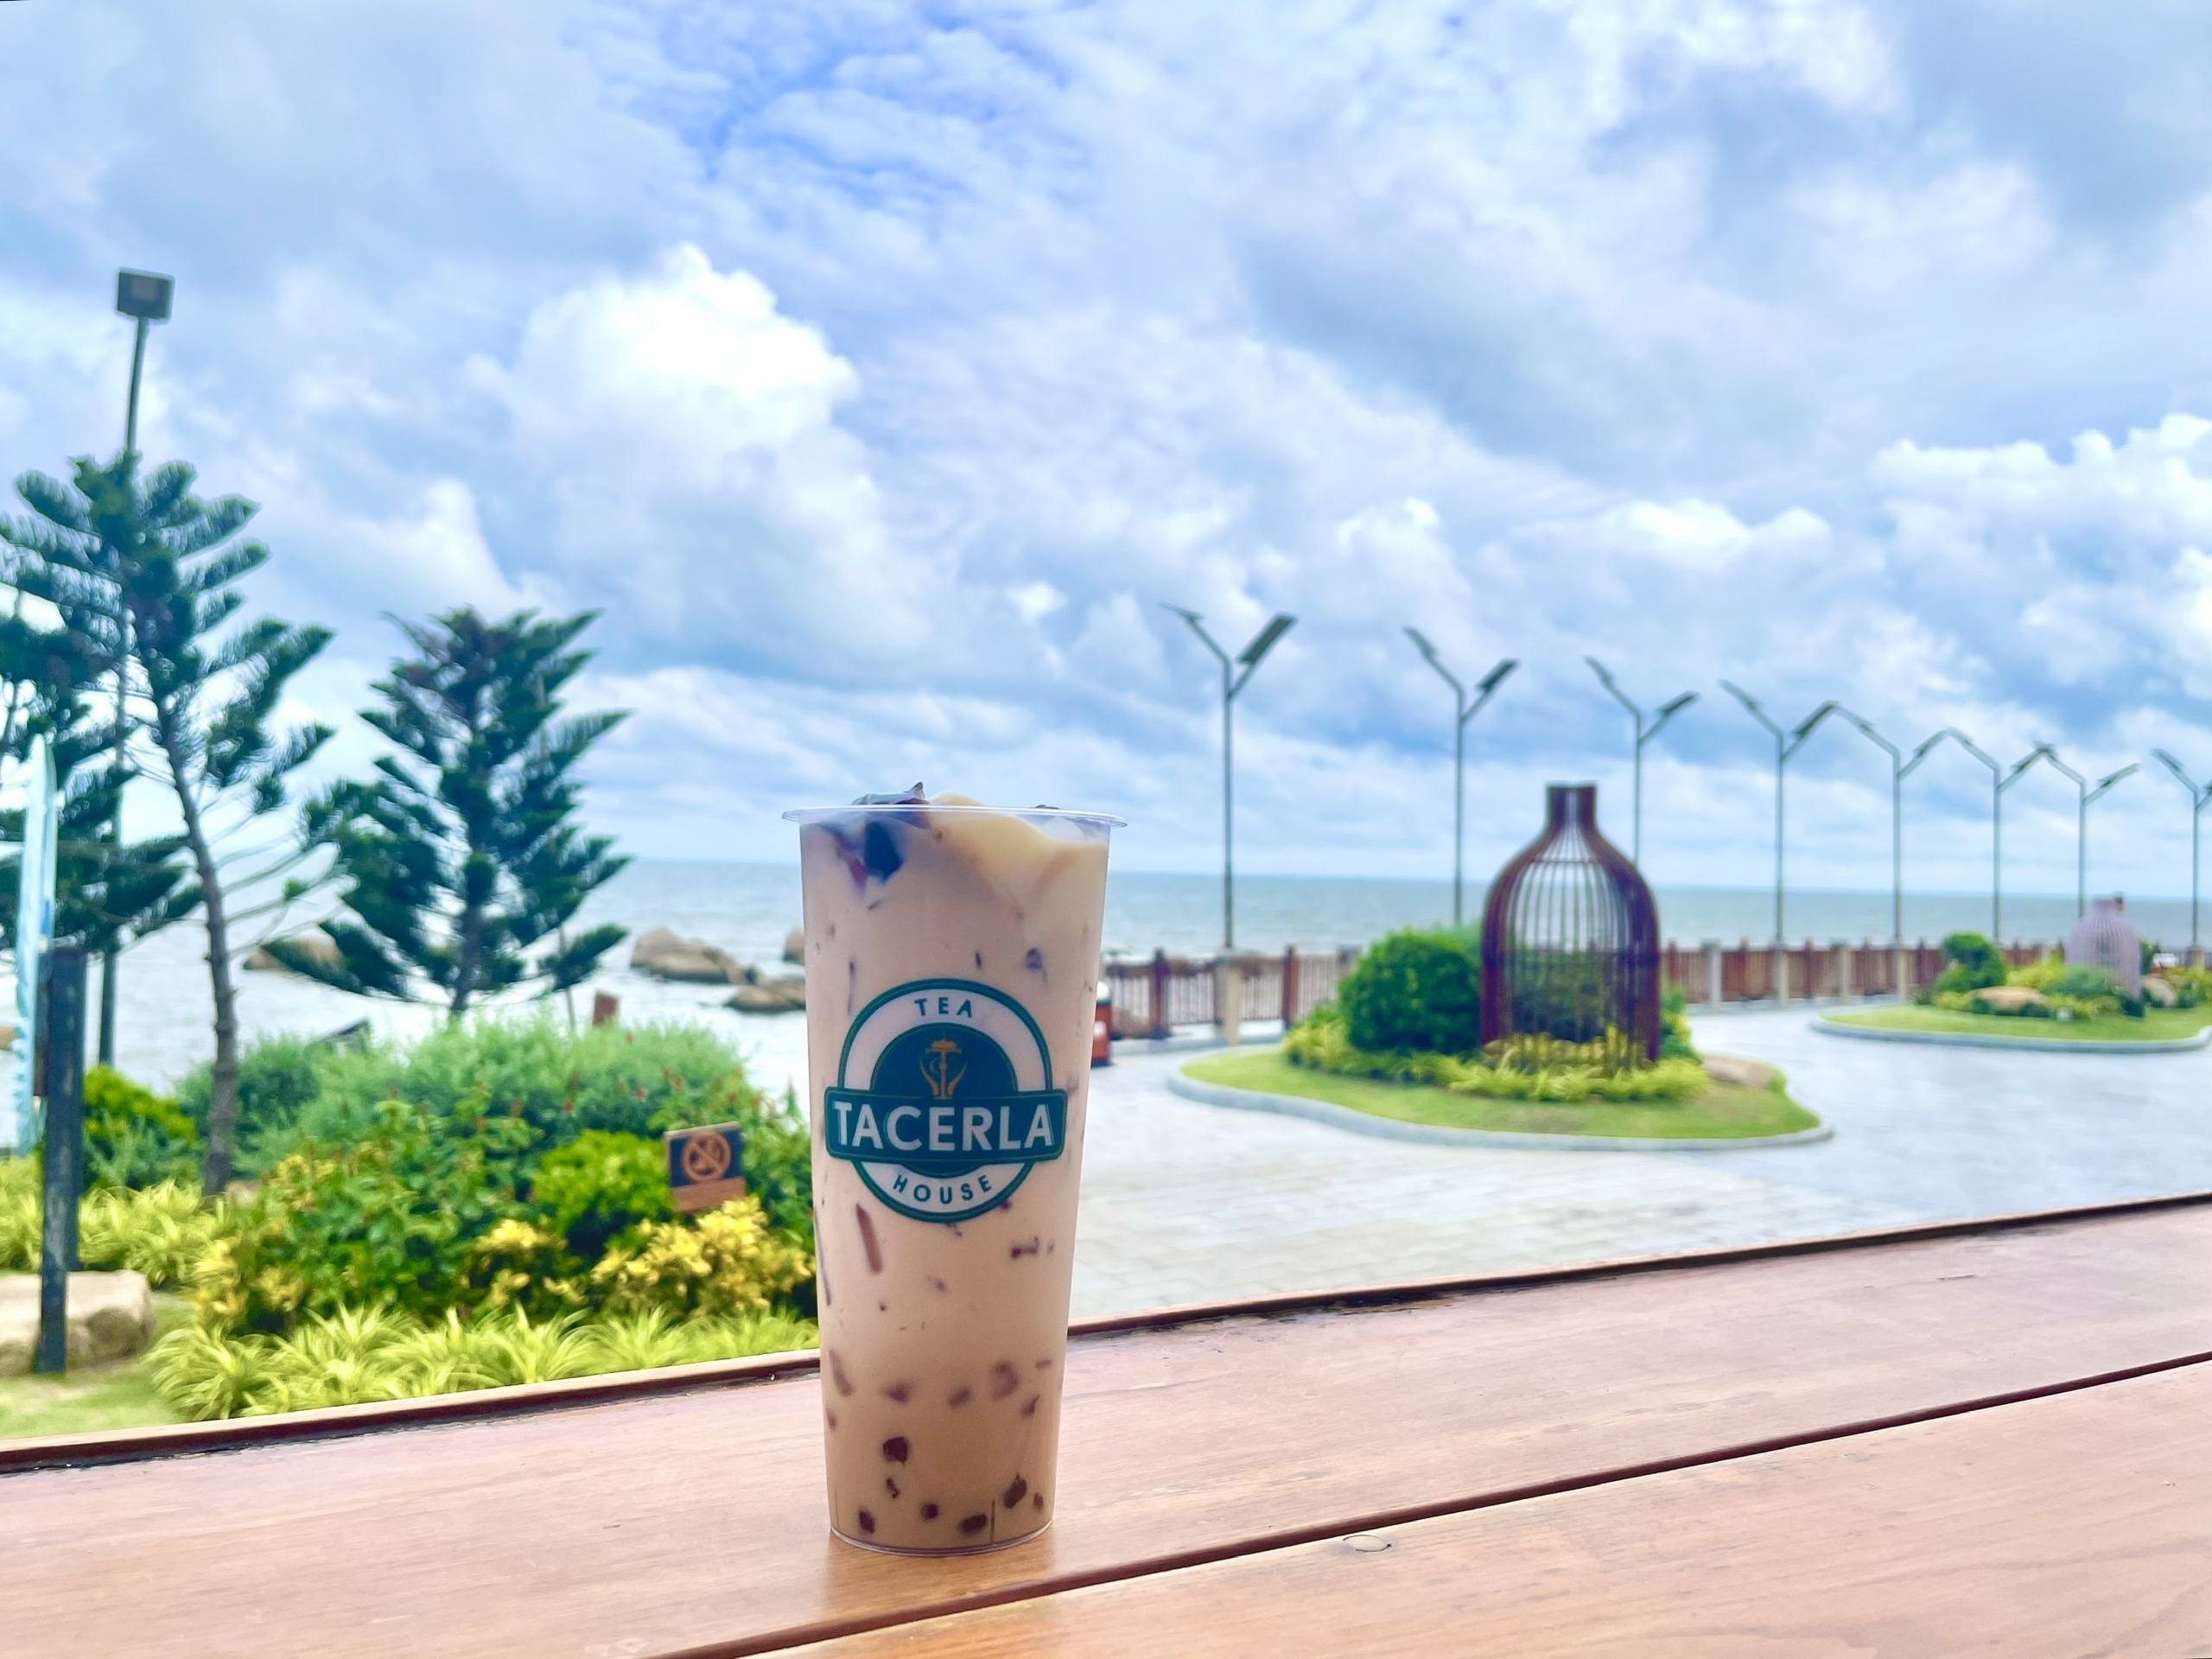 Trân Châu Beach & Resort ra mắt thương hiệu và cửa hàng trà sữa Tacerla Tea House